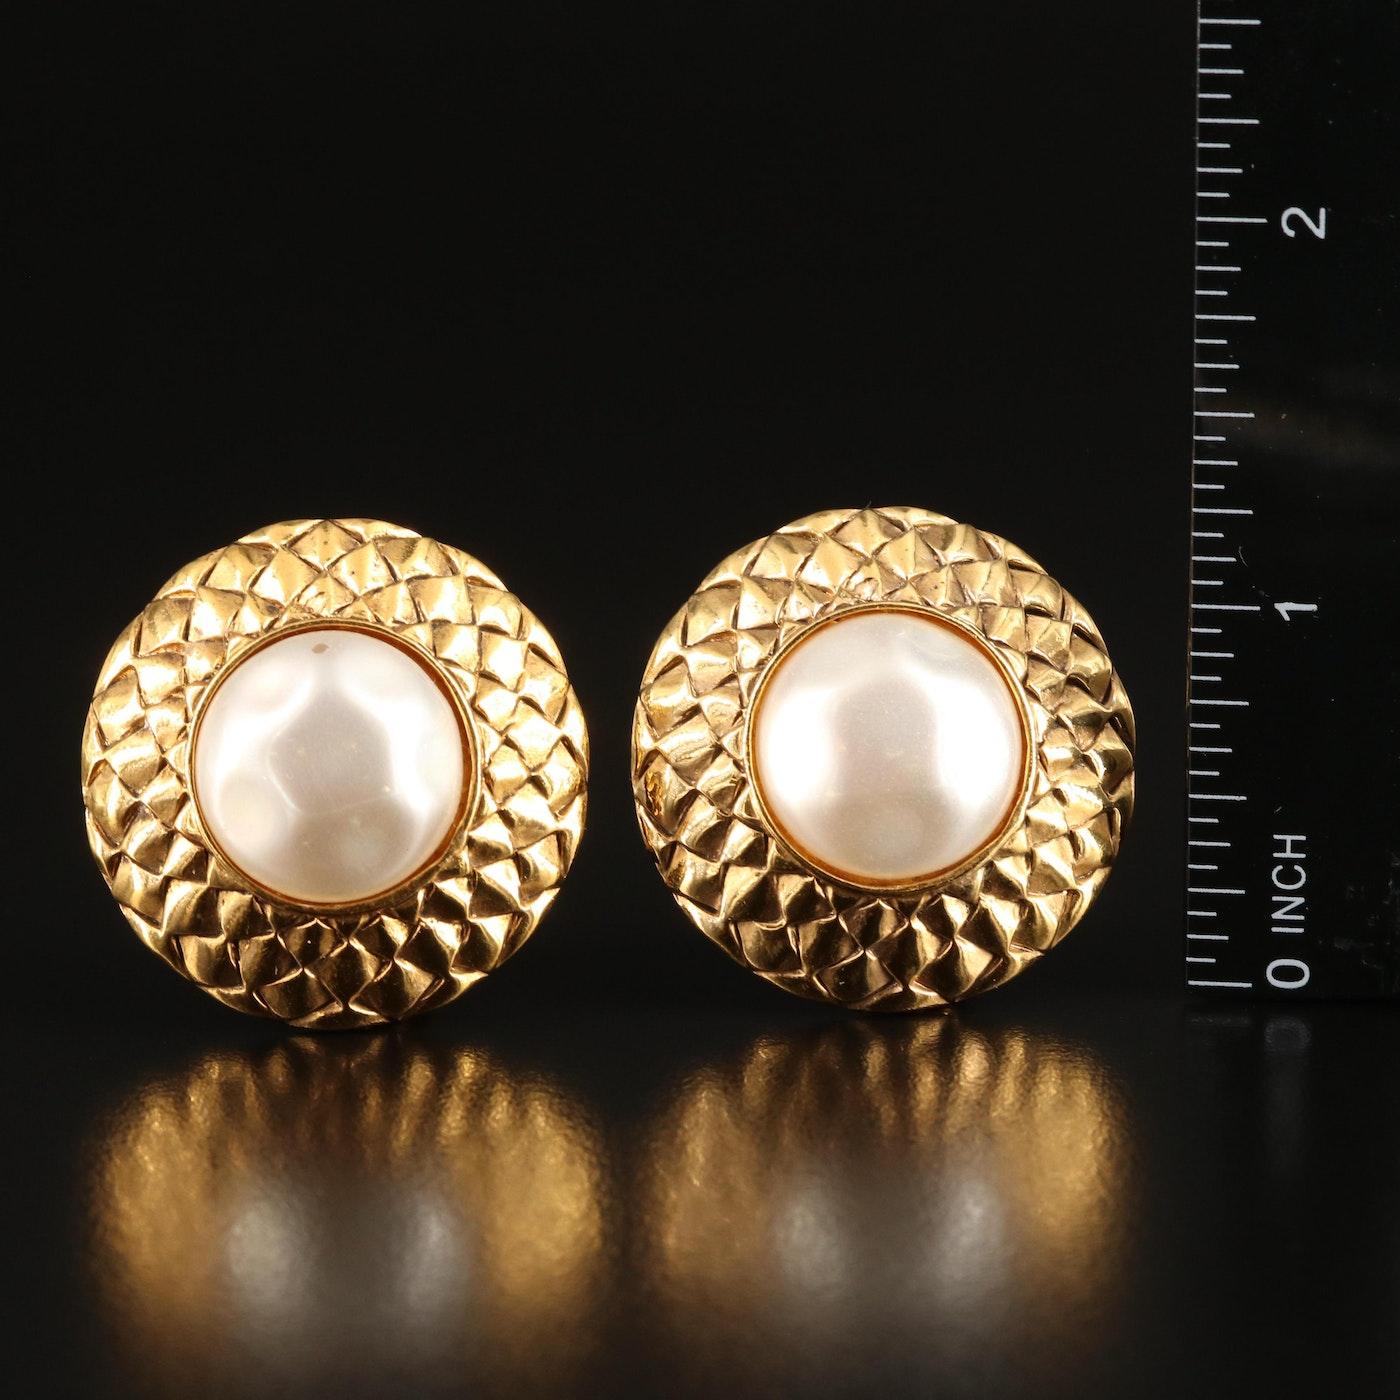 80s chanel earrings